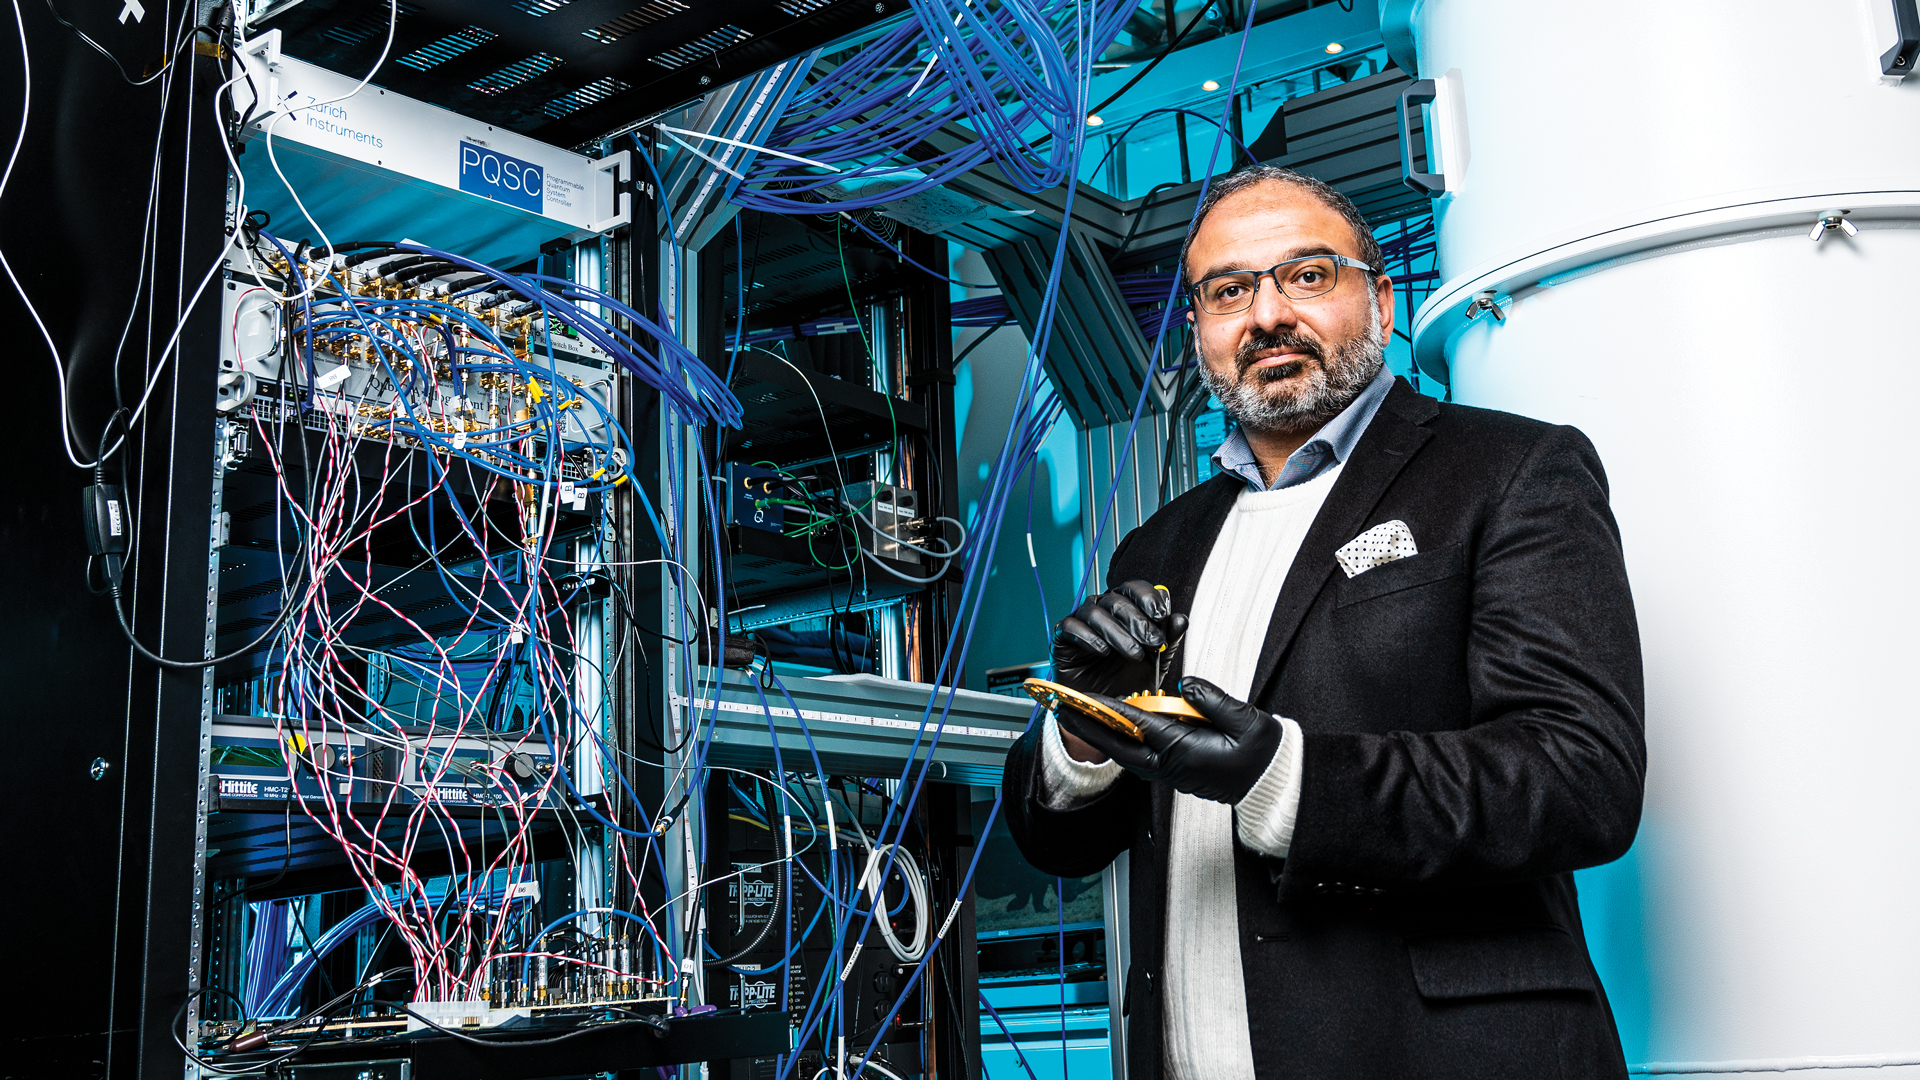 Photo of Irfan Siddiqi standing in front a large computer, wearing black disposable gloves, holding a quantum chip Photo d'Irfan Siddiqi debout devant un grand ordinateur, portant des gants noirs jetables et tenant une puce quantique